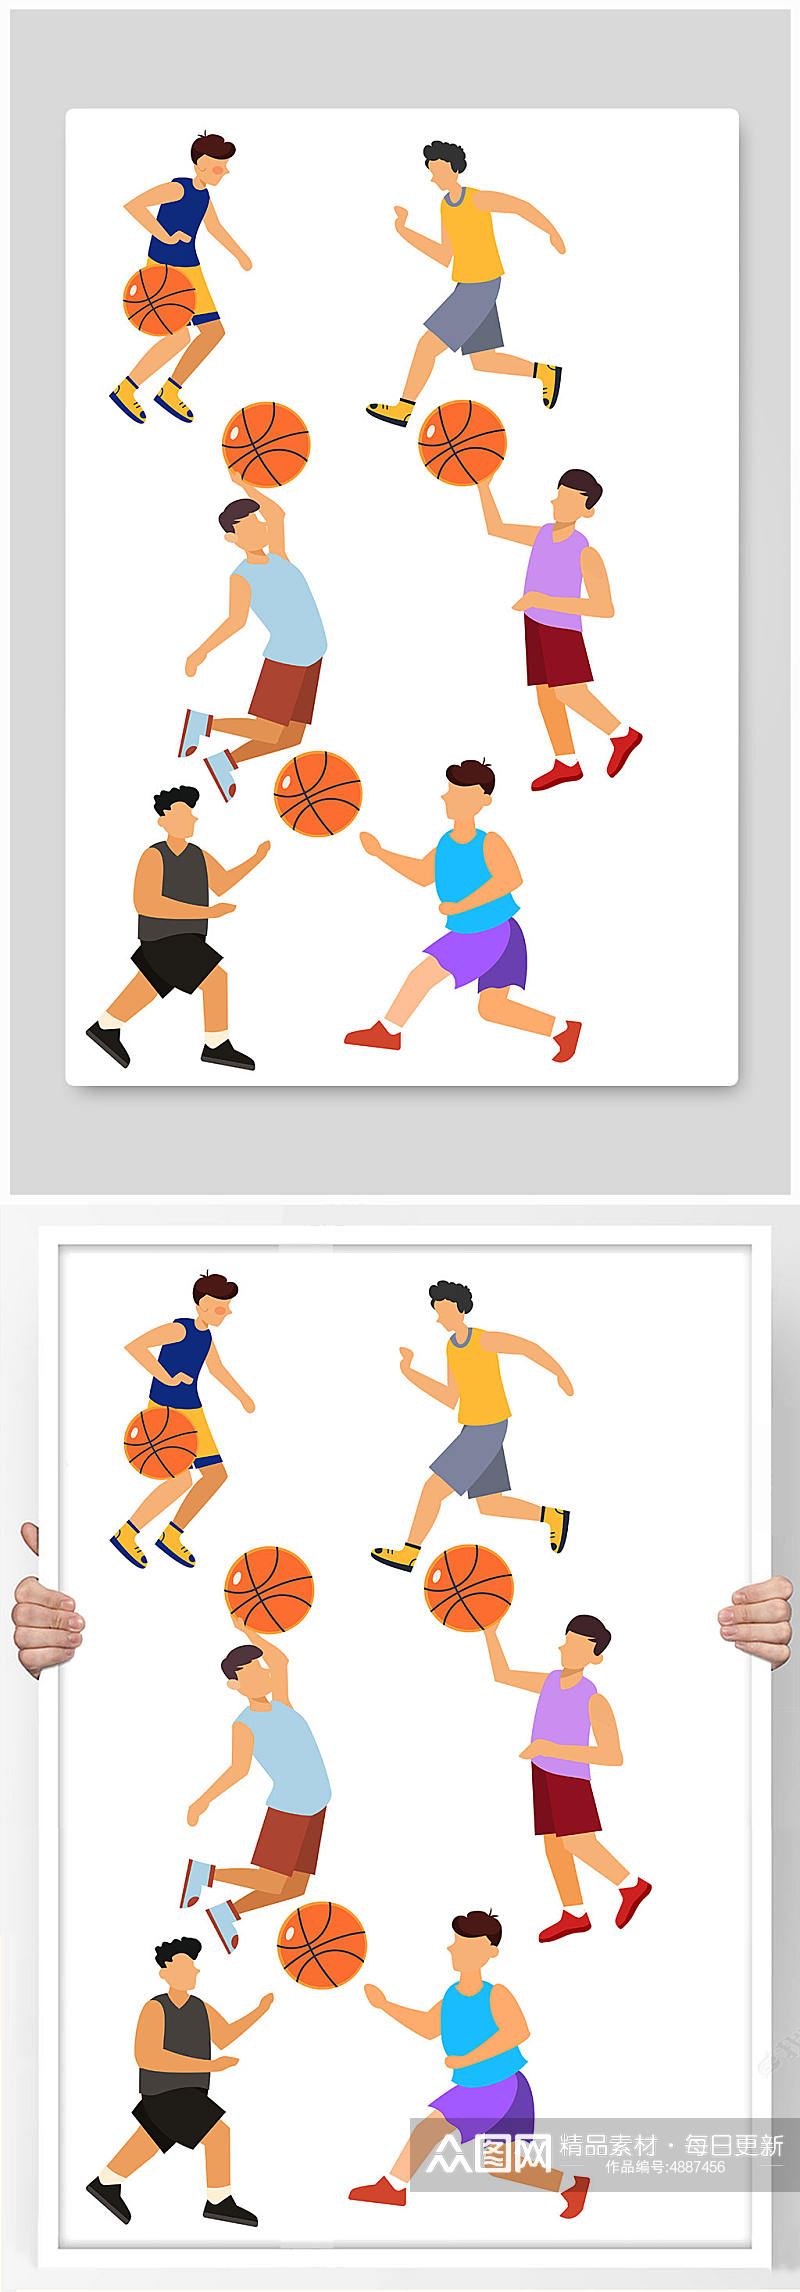 扁平化打篮球运动人物元素插画素材